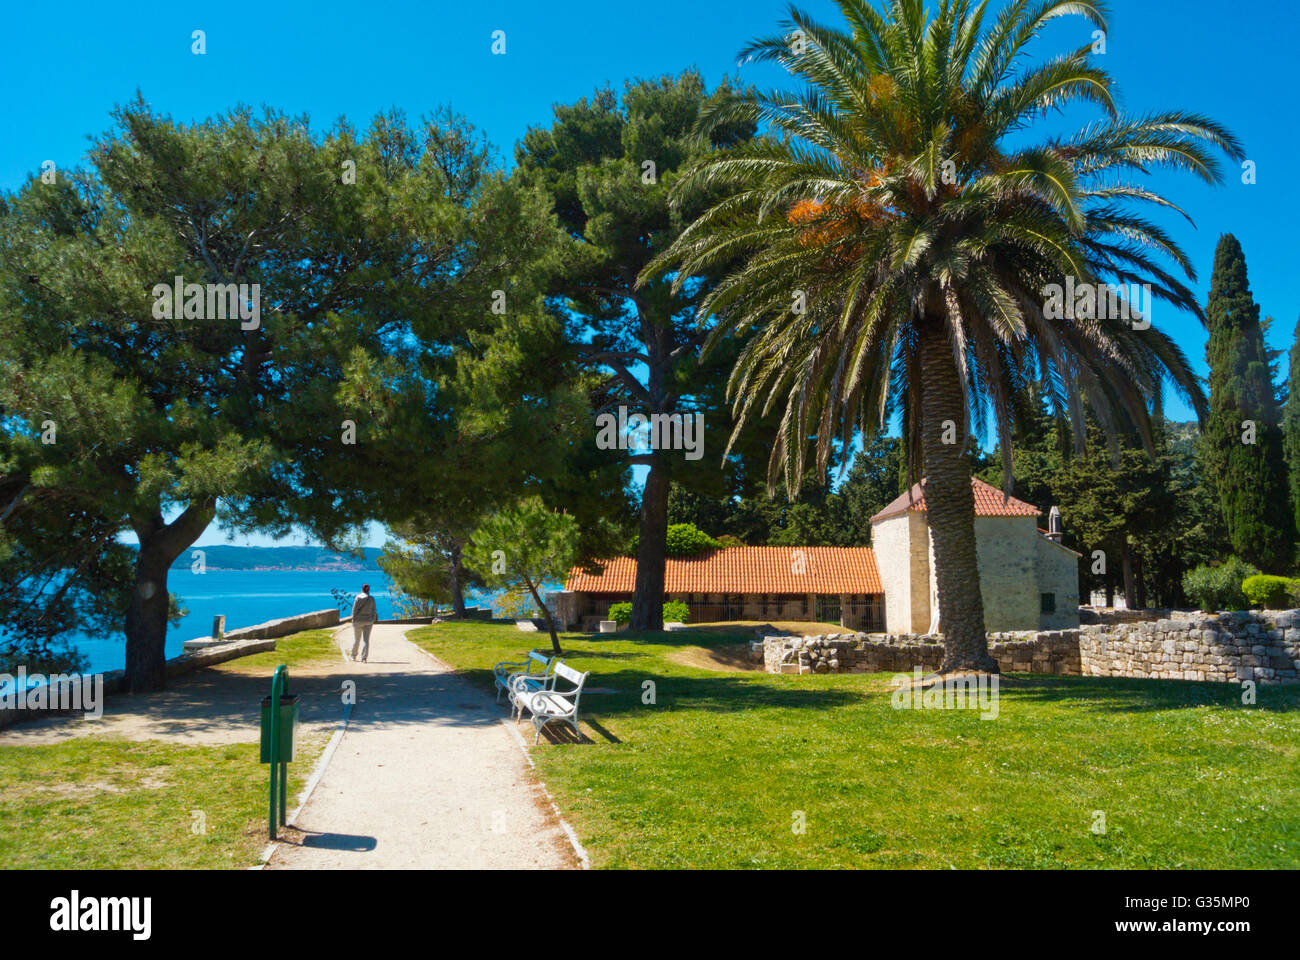 sustipan karta Sustipan park, Split, Dalmatia, Croatia Stock Photo: 105232232   Alamy sustipan karta